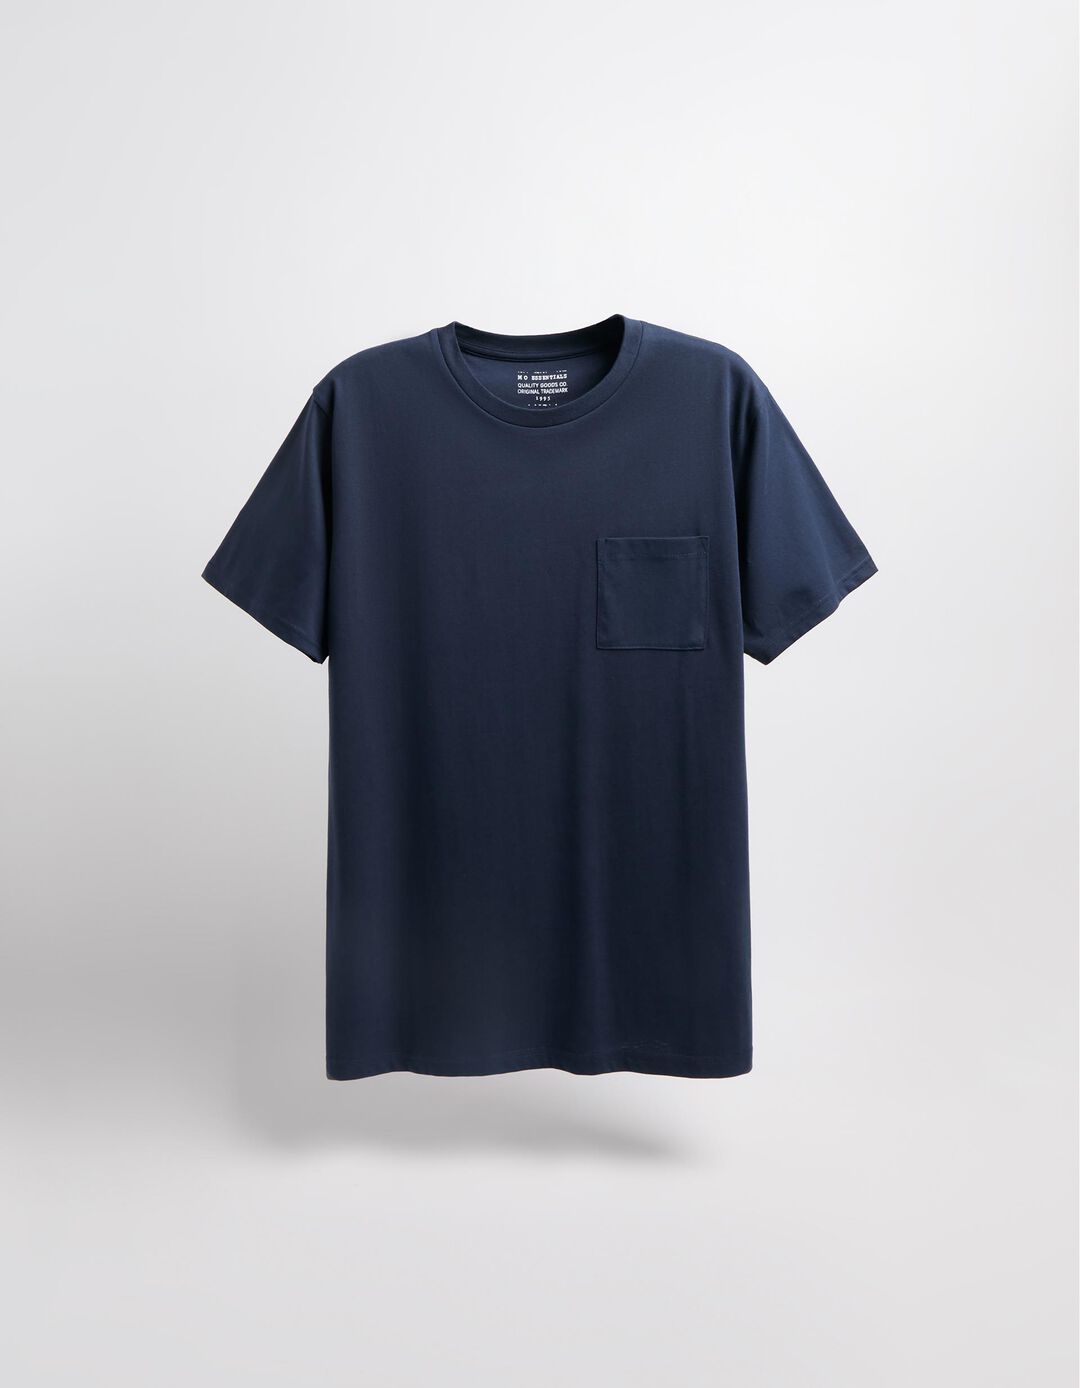 T-shirt Bolso, Homem, Azul Escuro